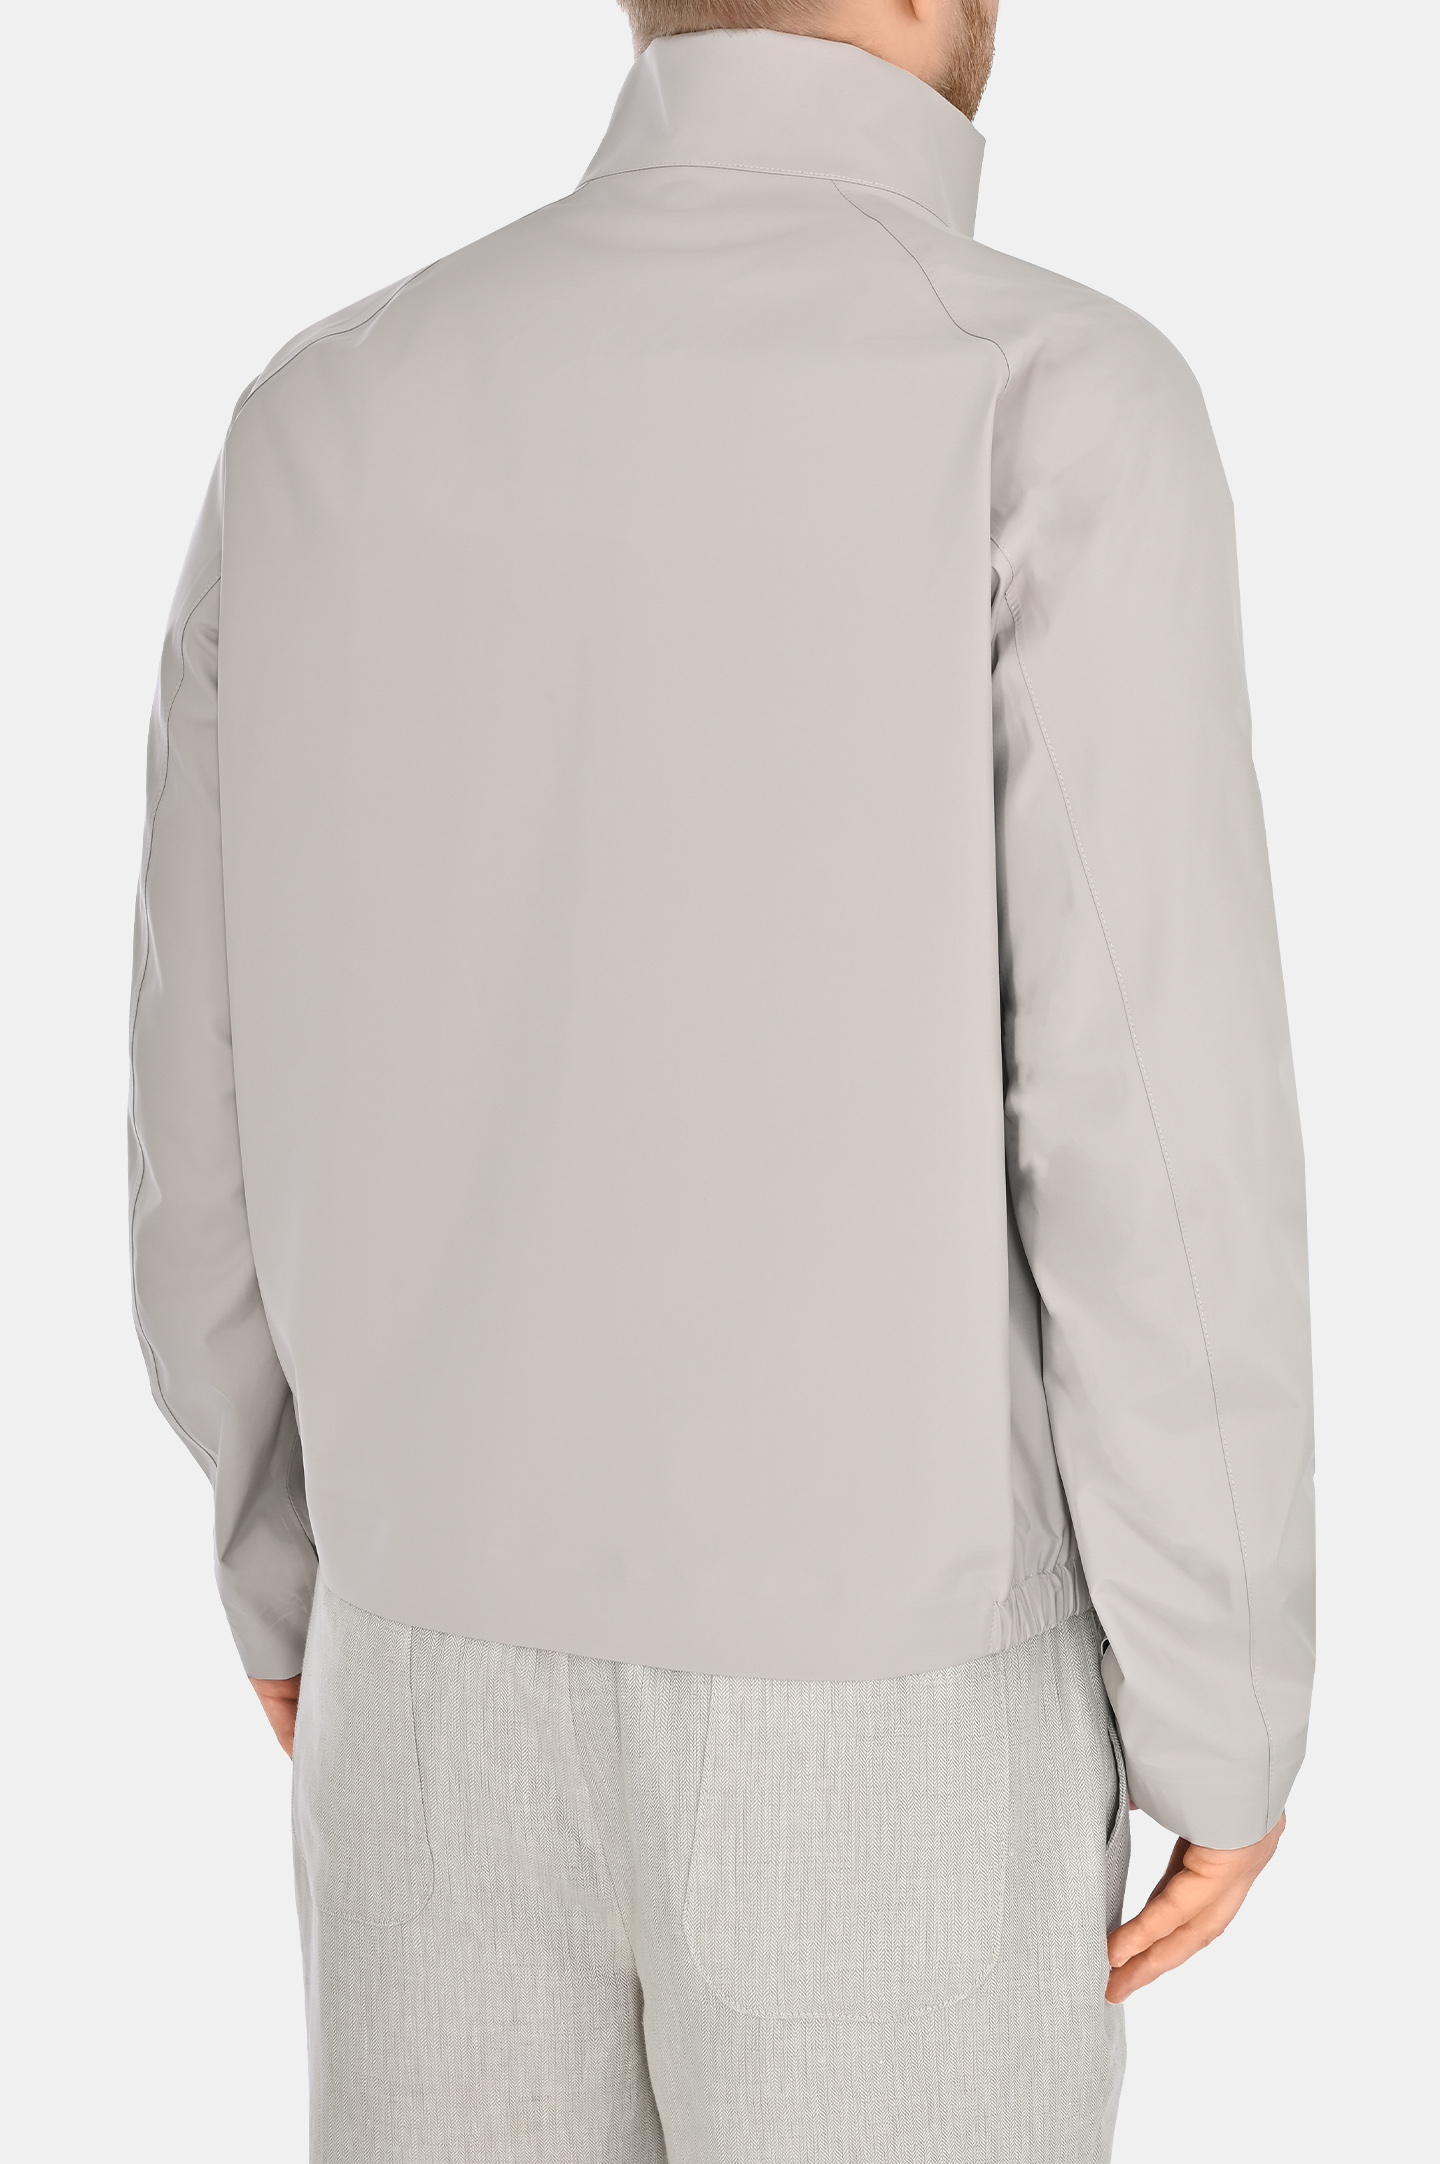 Куртка из полиэстера COLOMBO GB00203/-/A00921/80005, цвет: Светло-бежевый, Мужской